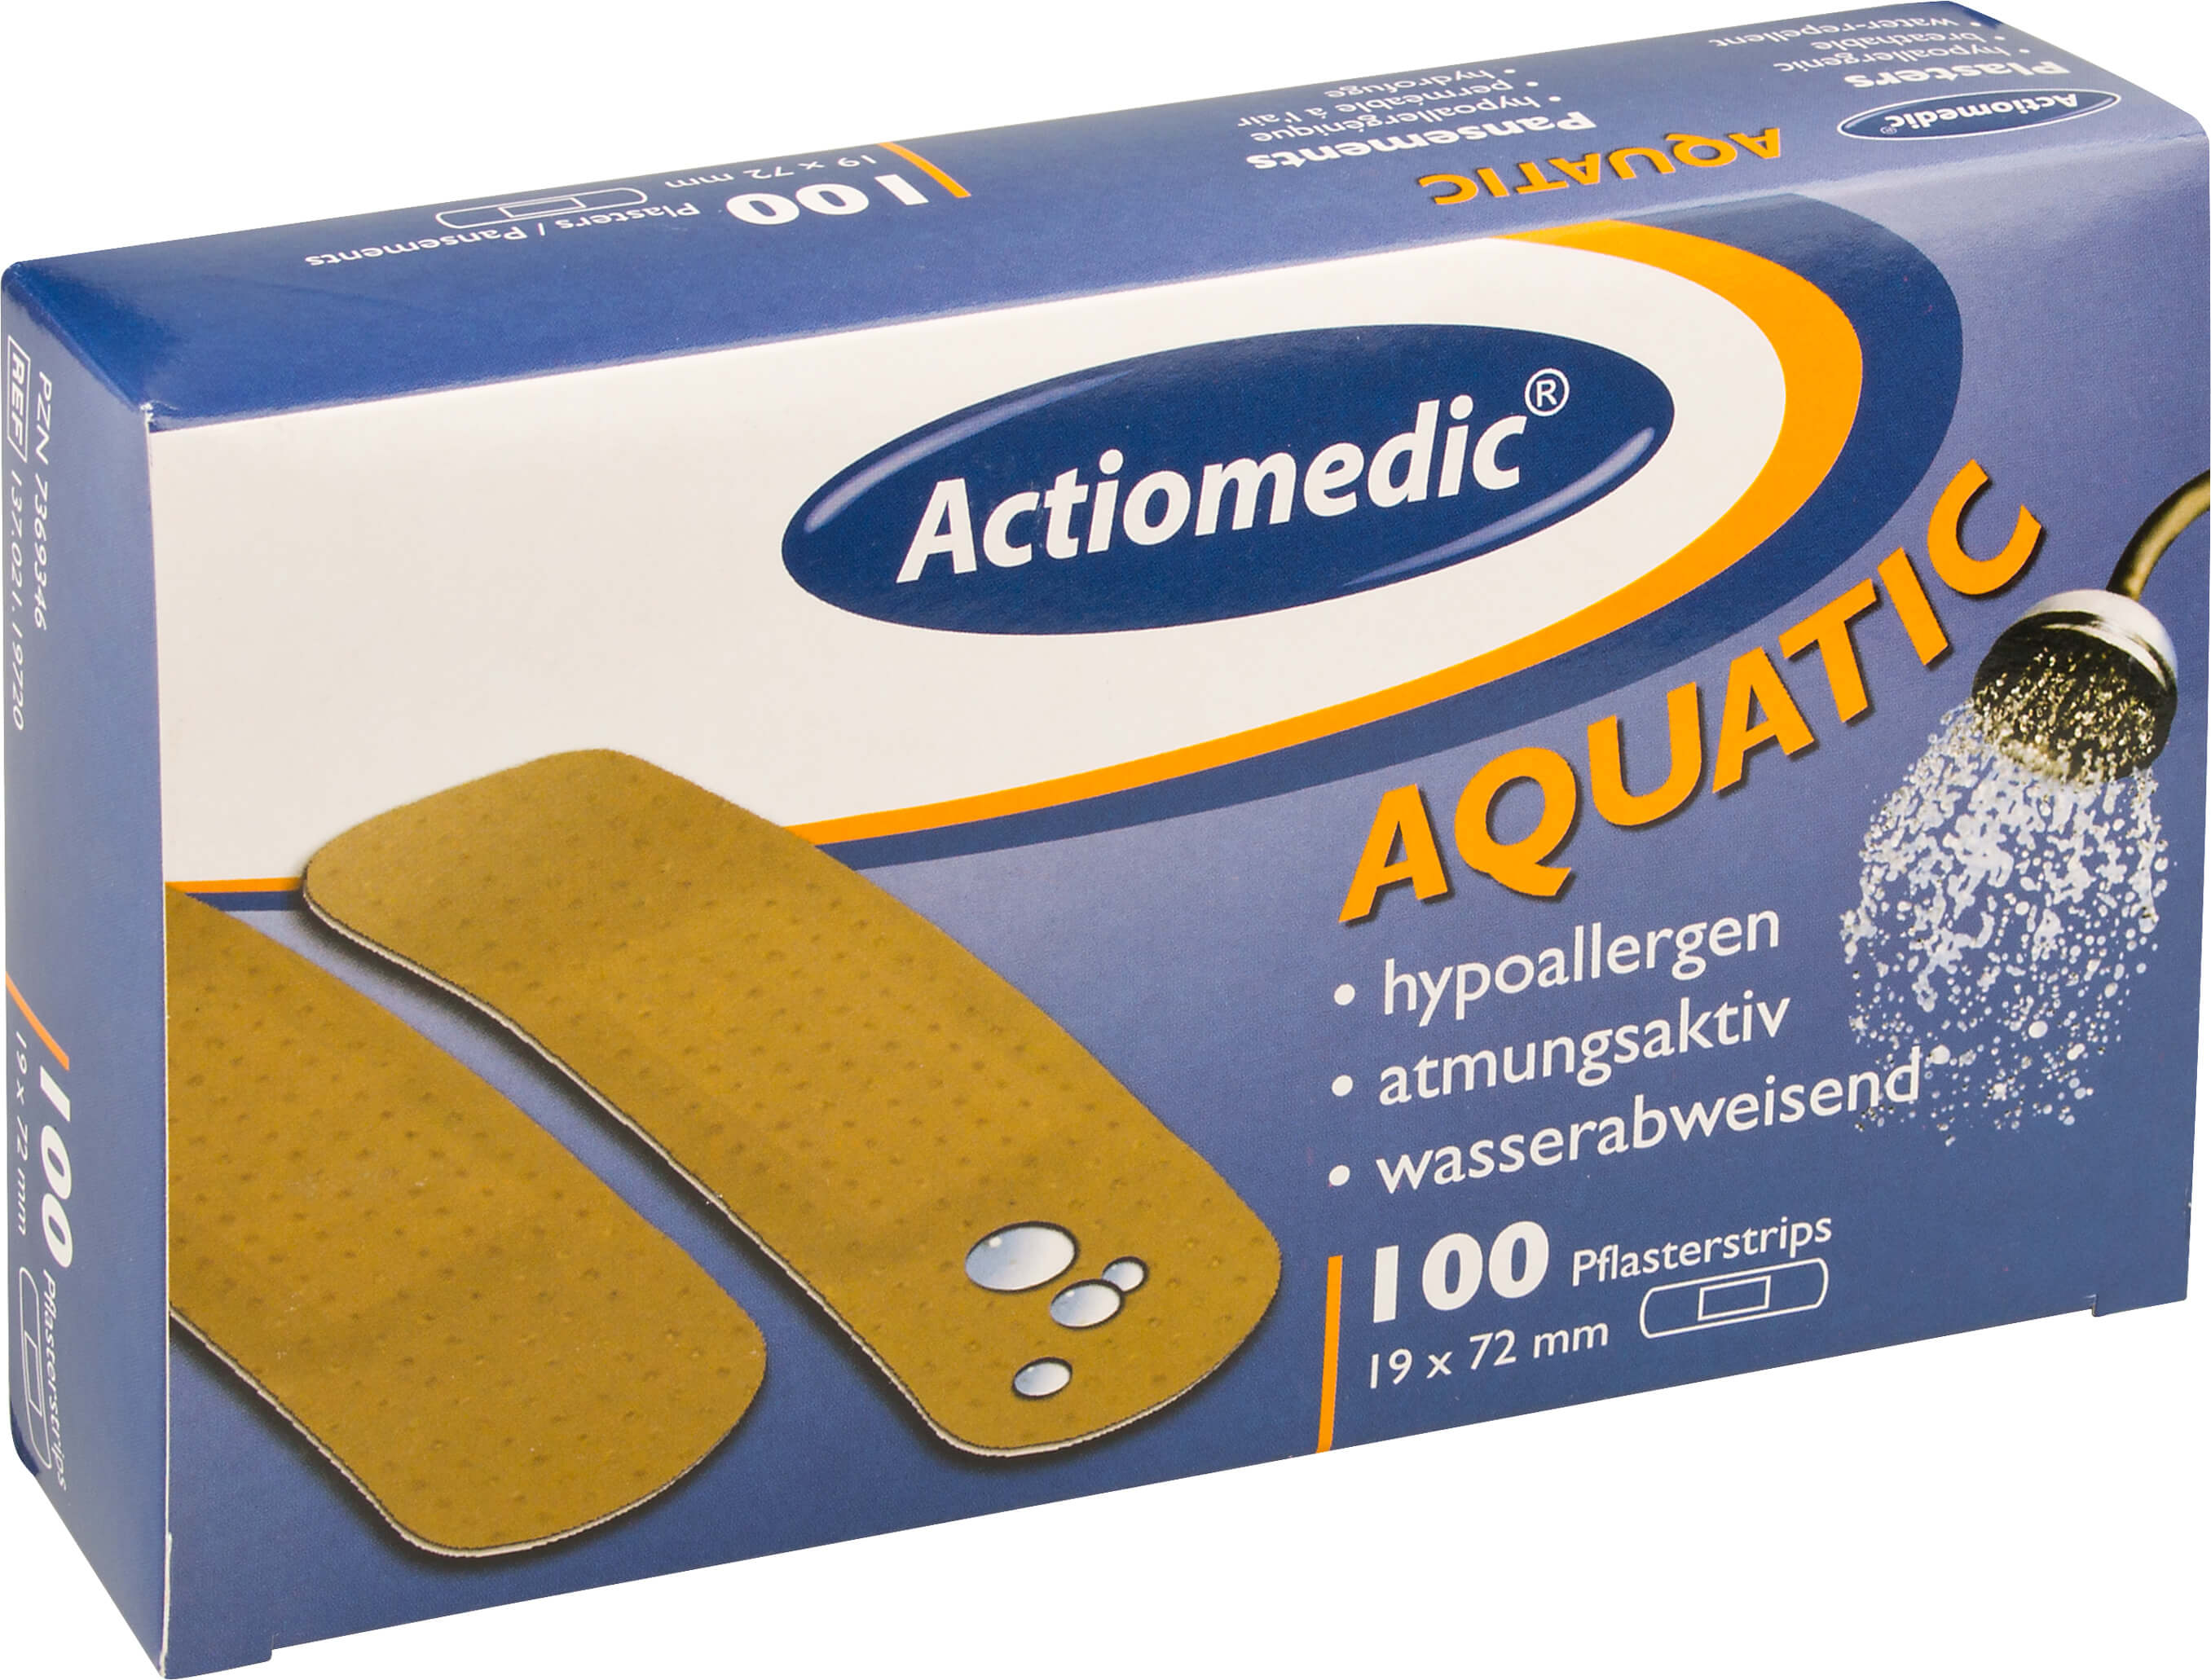 band-aid, Aquatic - Actiomedic, 19mm x 72mm, 100 pcs.